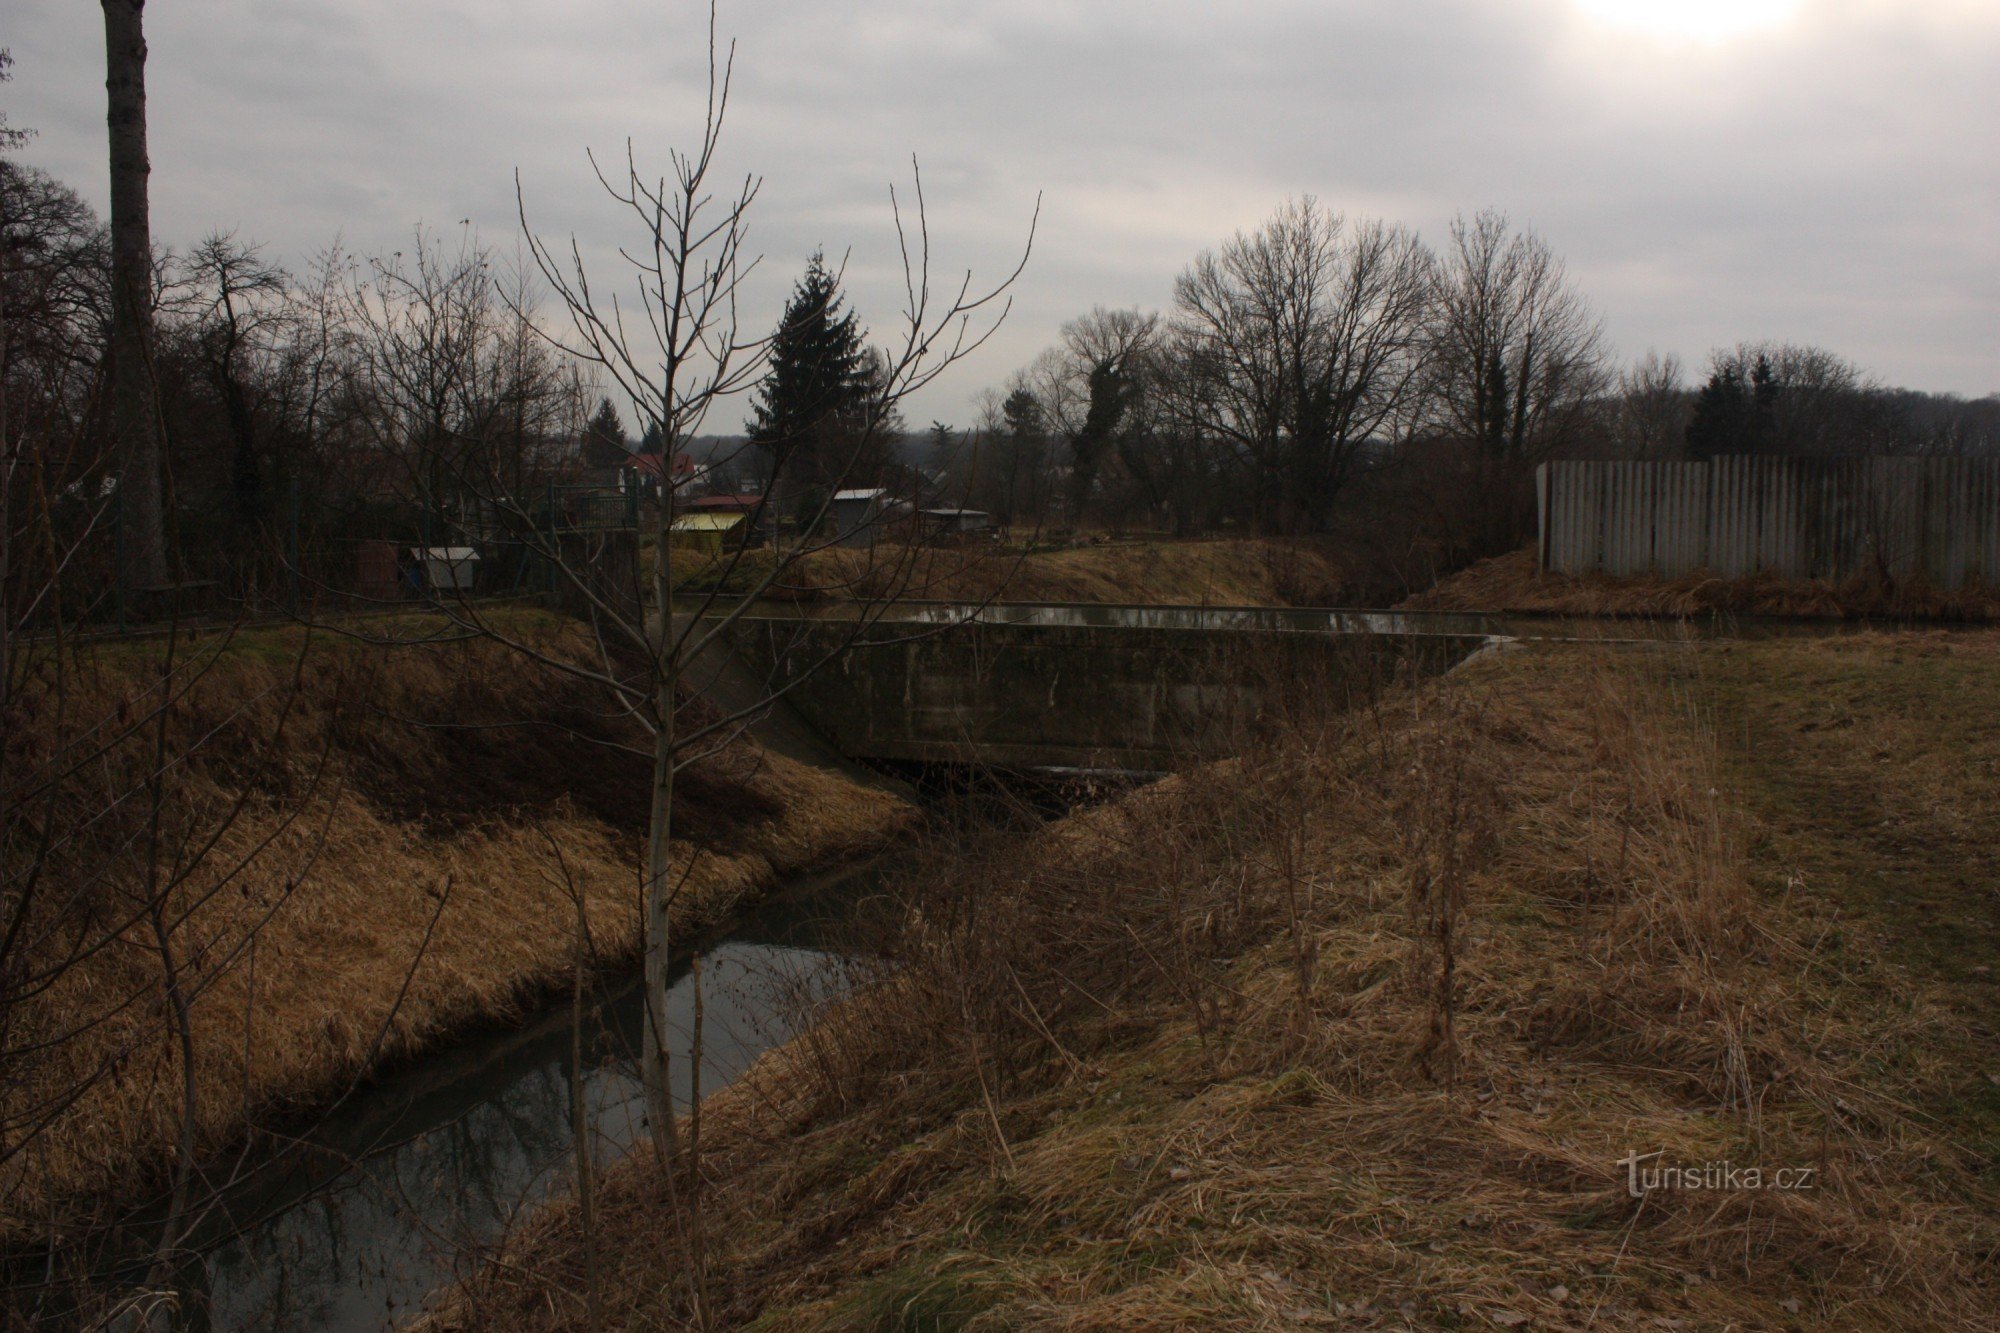 Traversée hors niveau du ruisseau Svodnice avec un entraînement de moulin